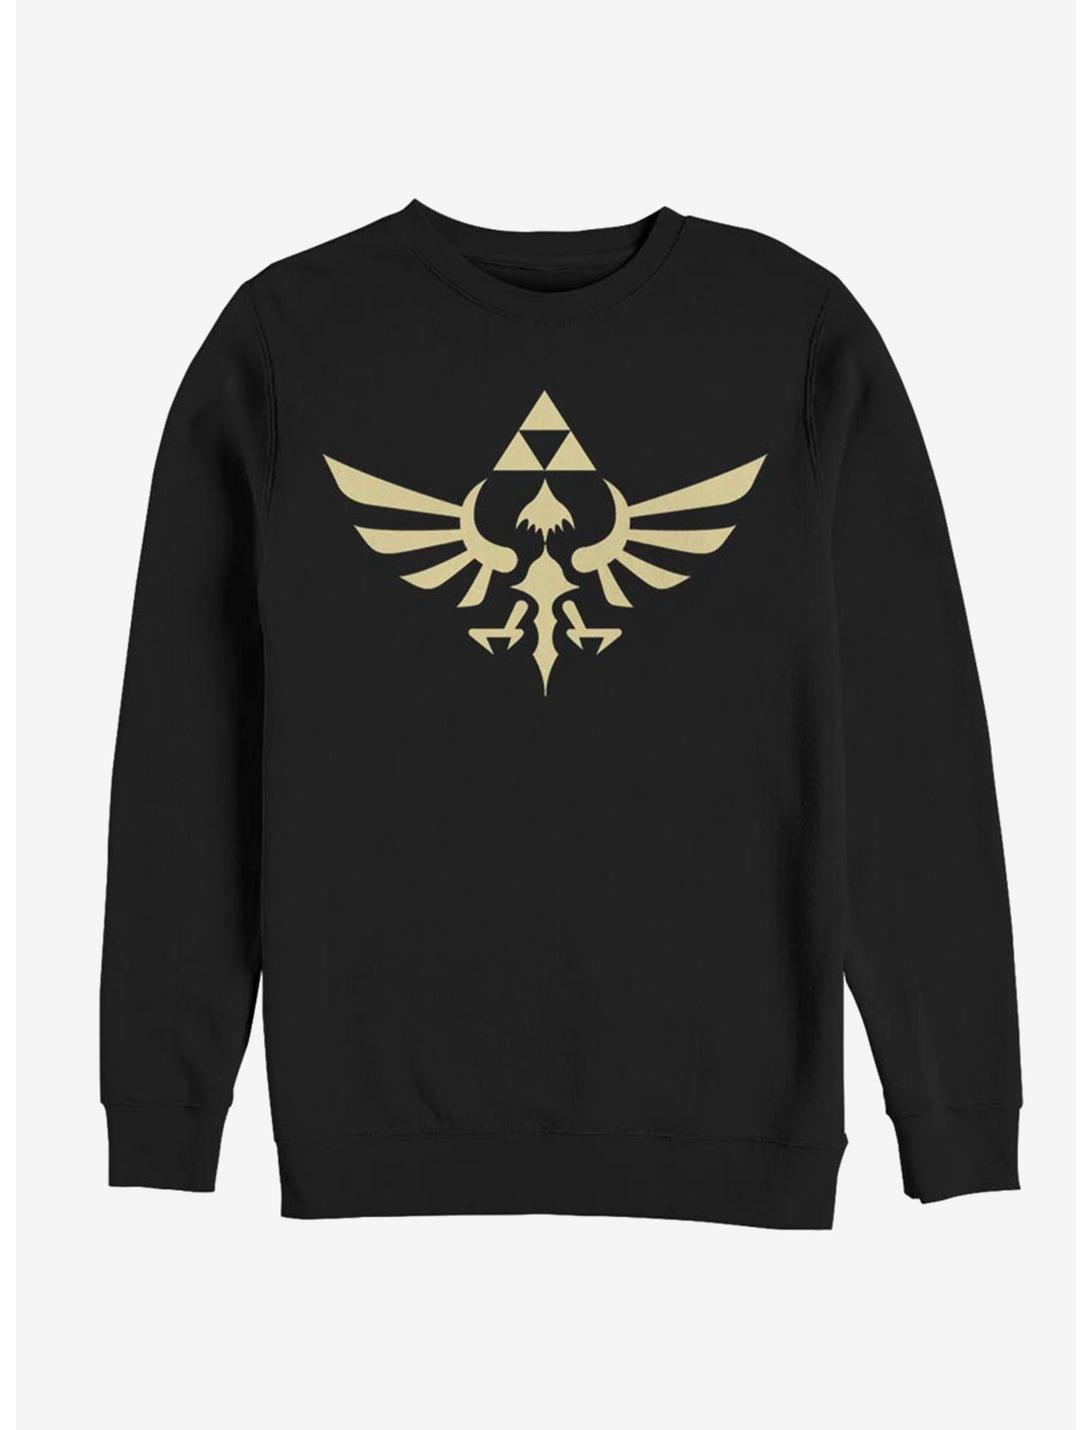 Nintendo Triumphant Triforce Sweatshirt, BLACK, hi-res